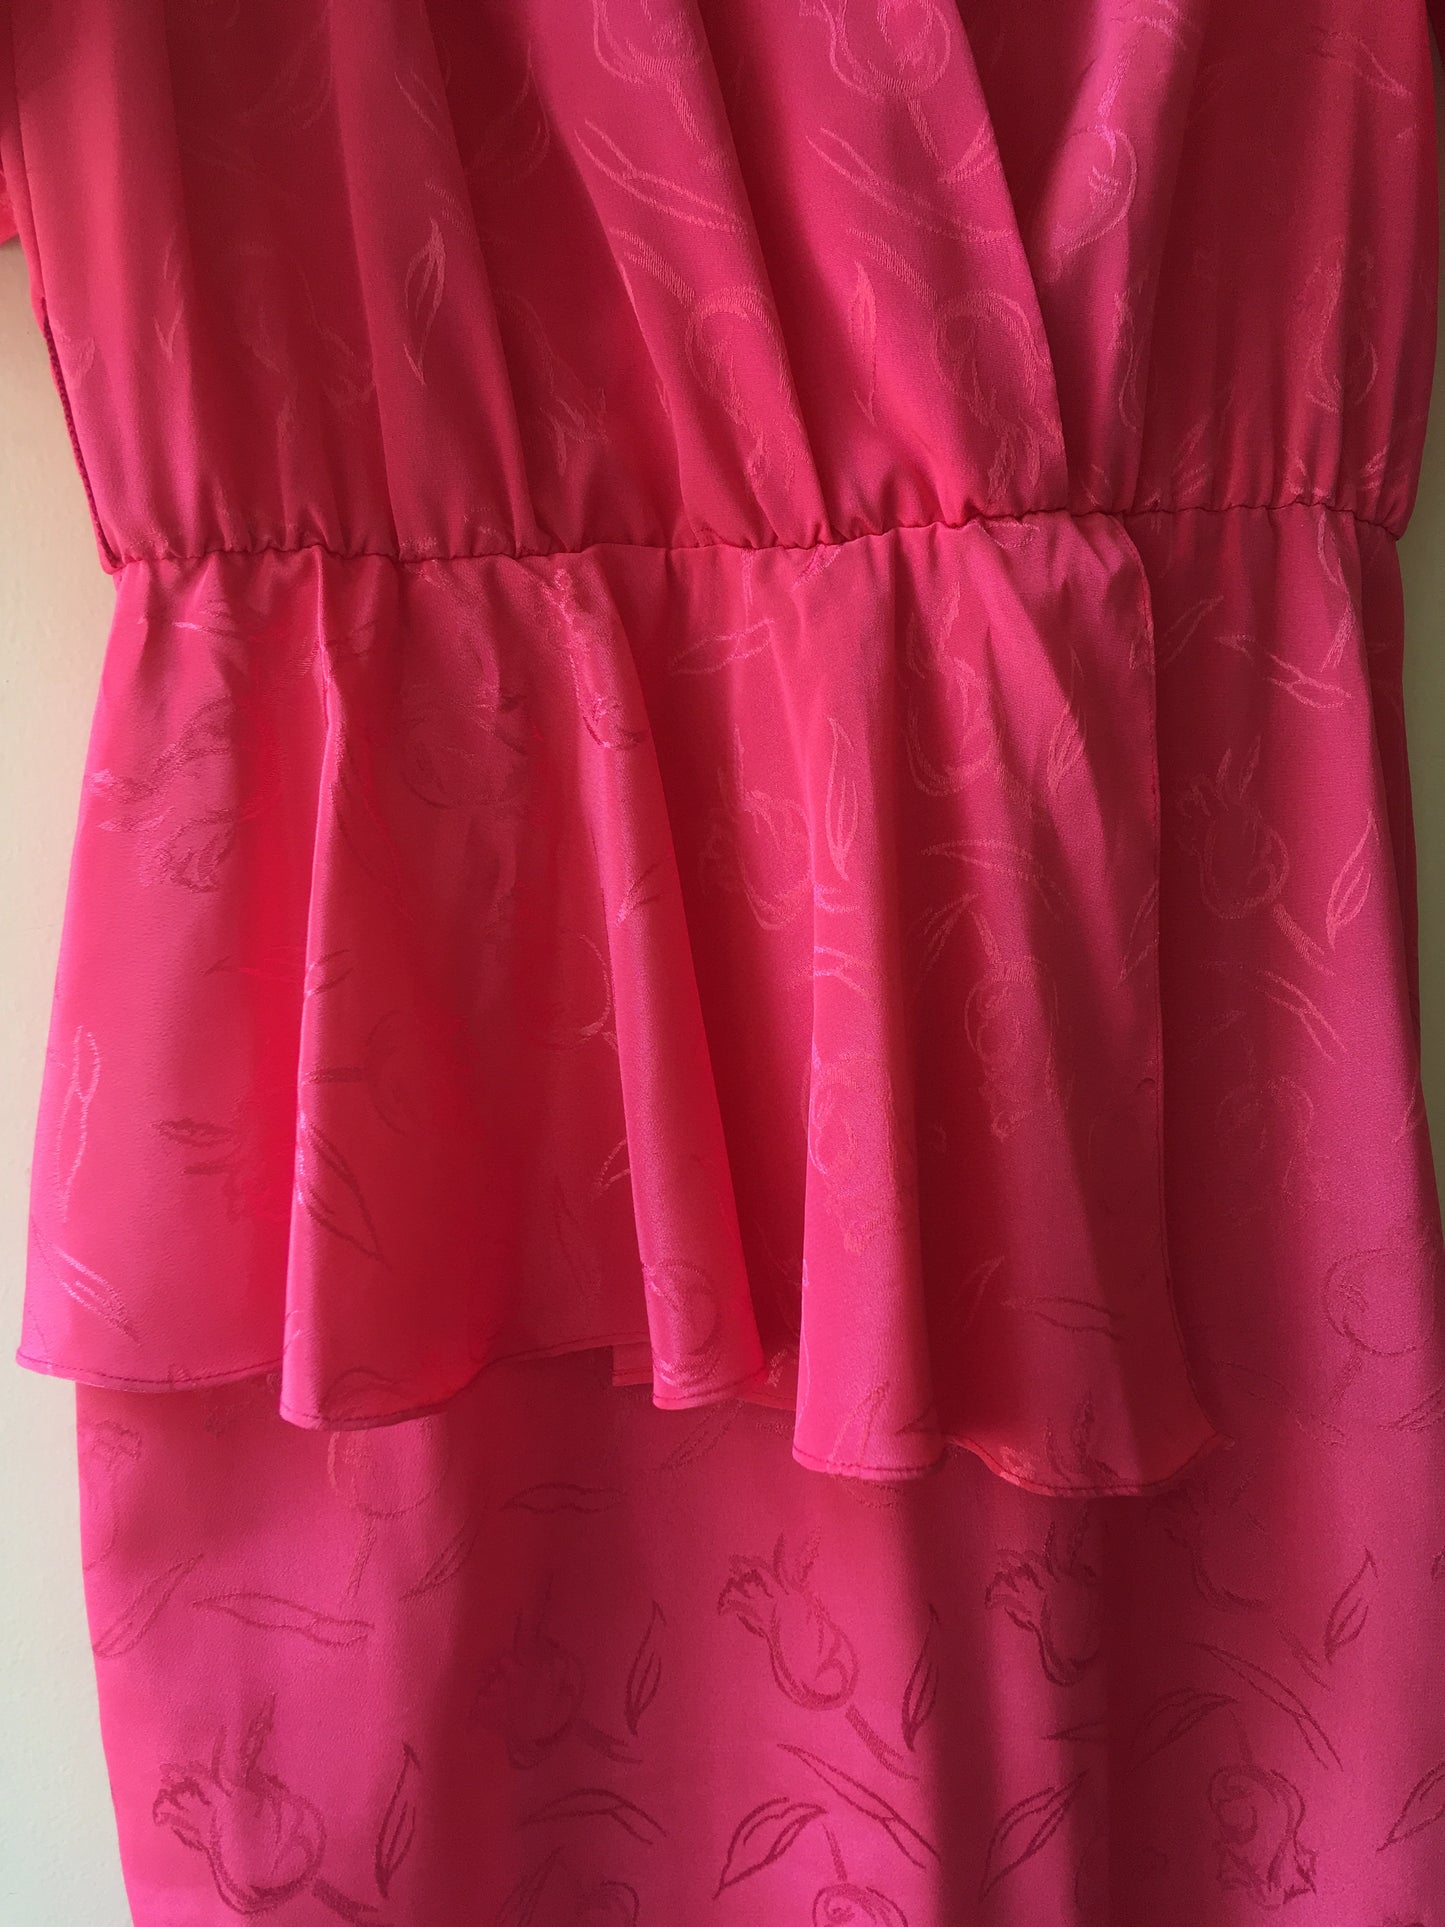 Vintage Pink Dress